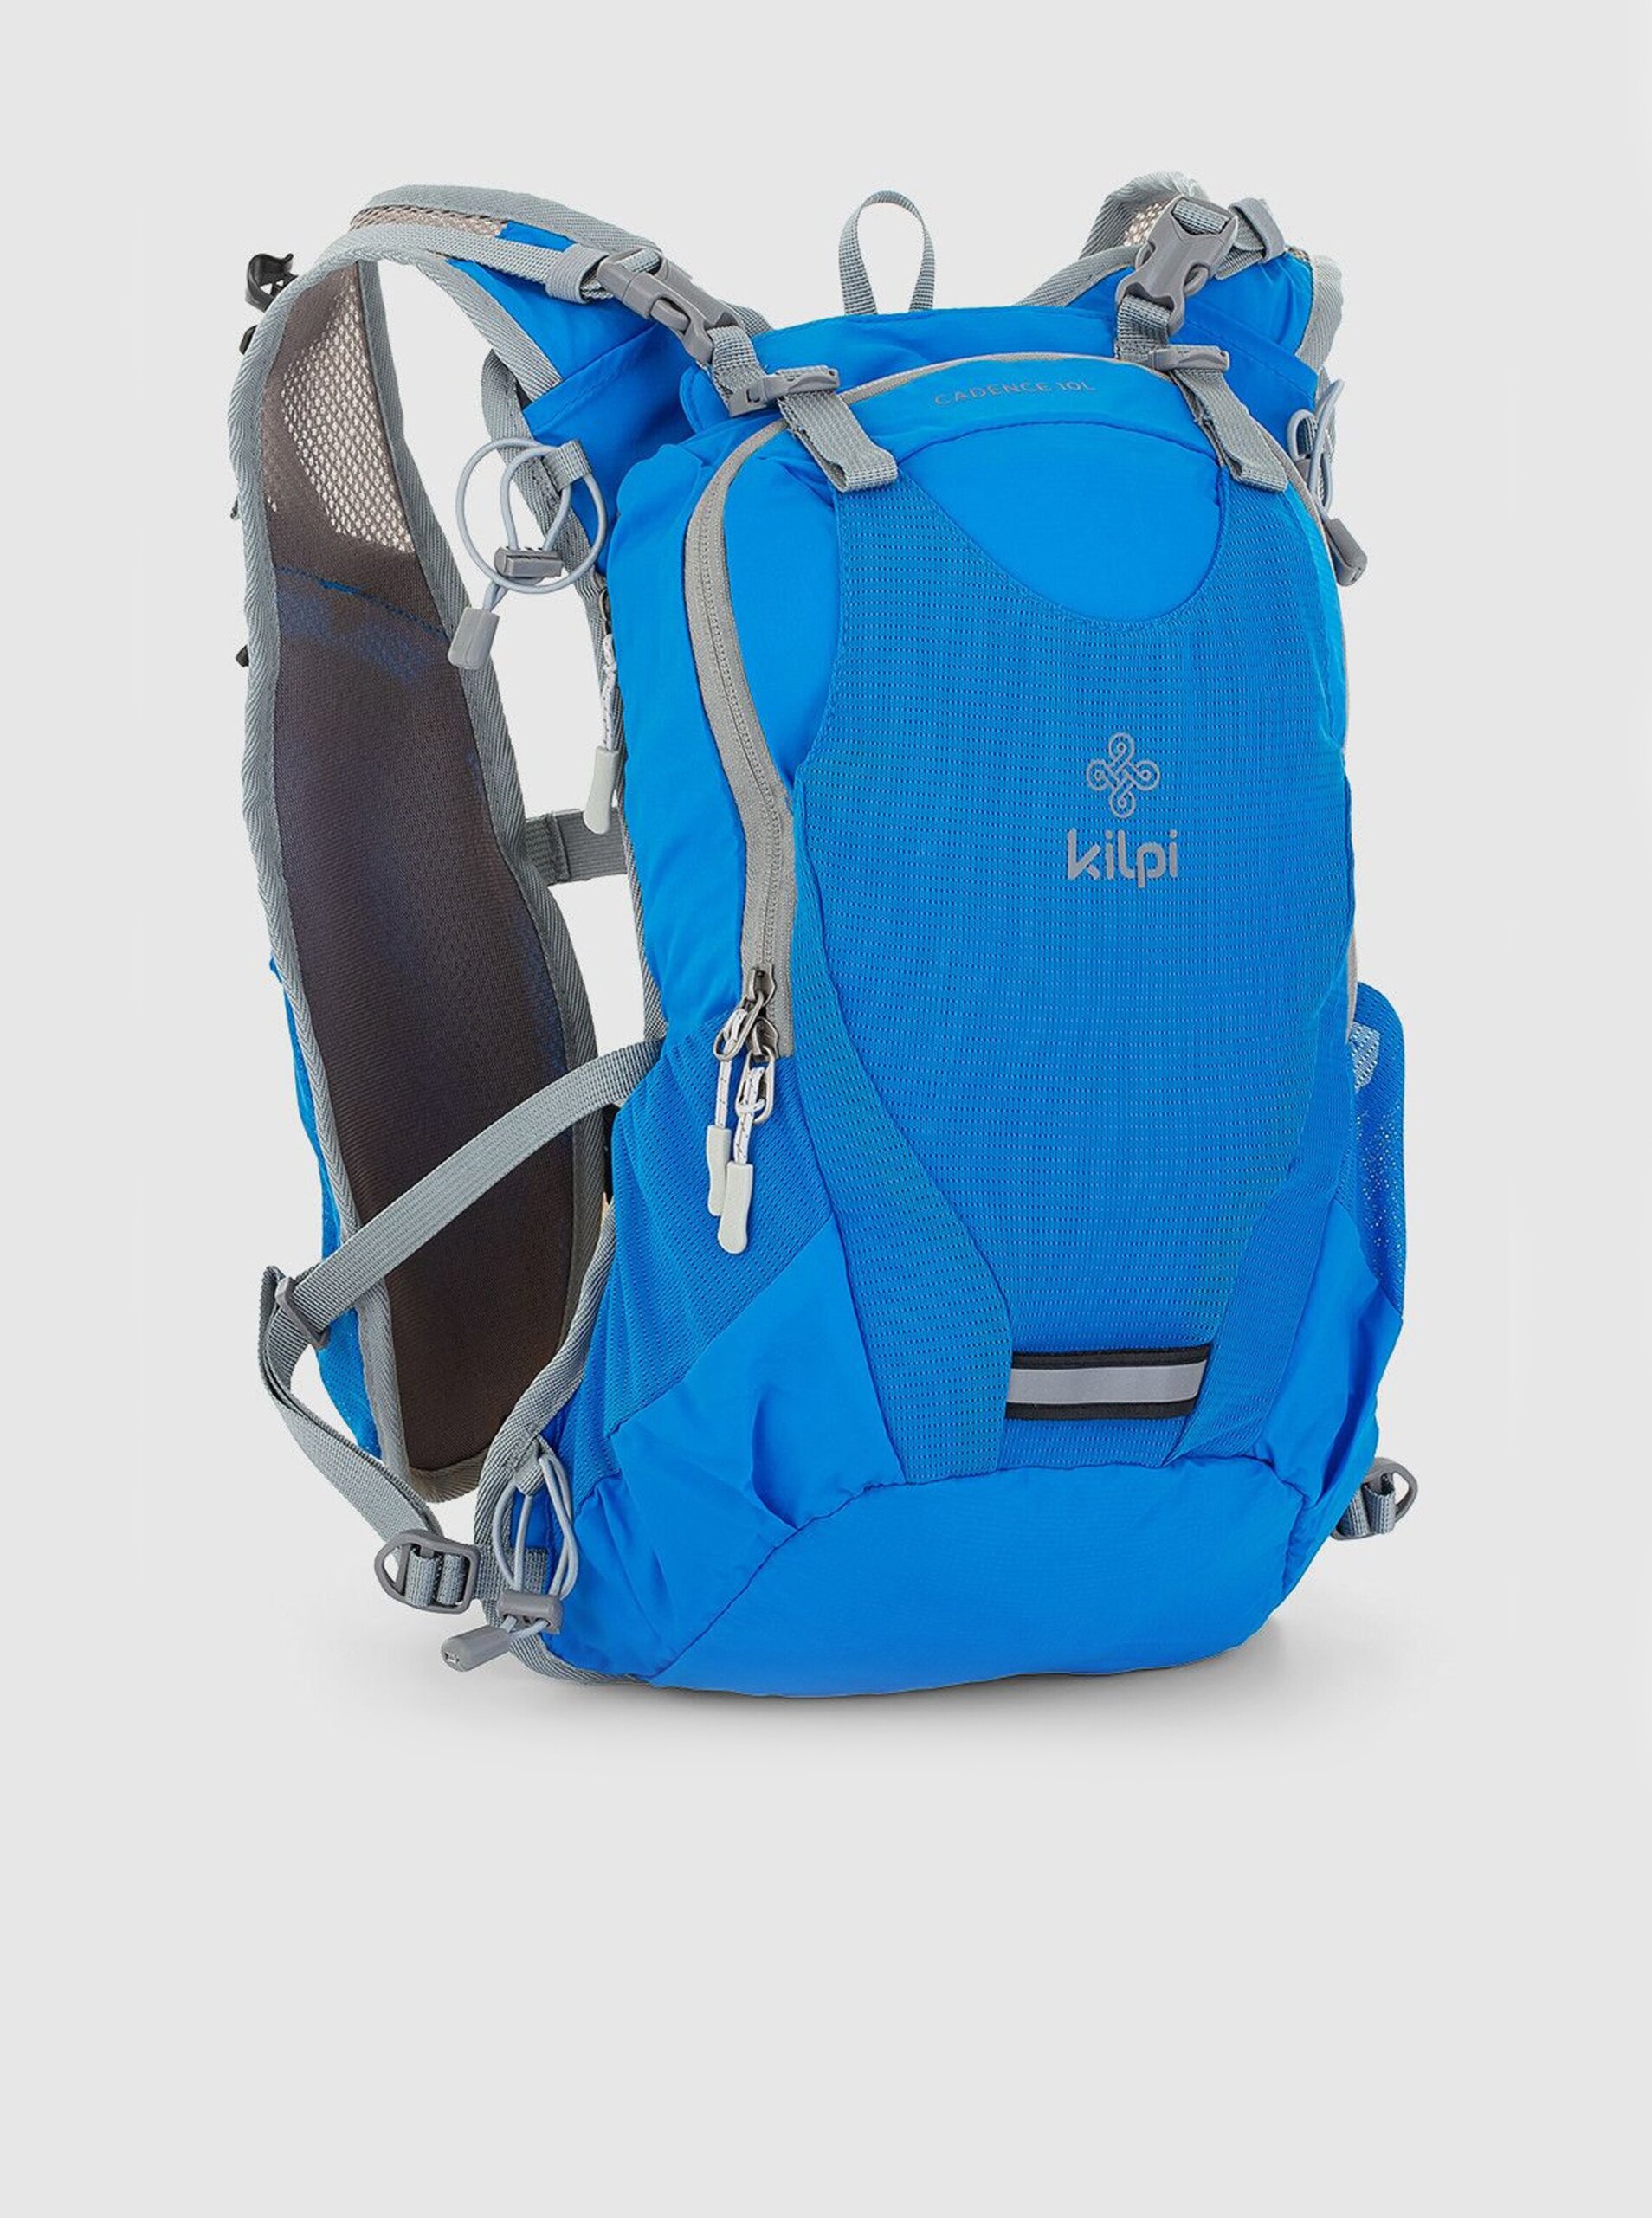 Lacno Modrý unisex športový ruksak Kilpi CADENCE (10 l)